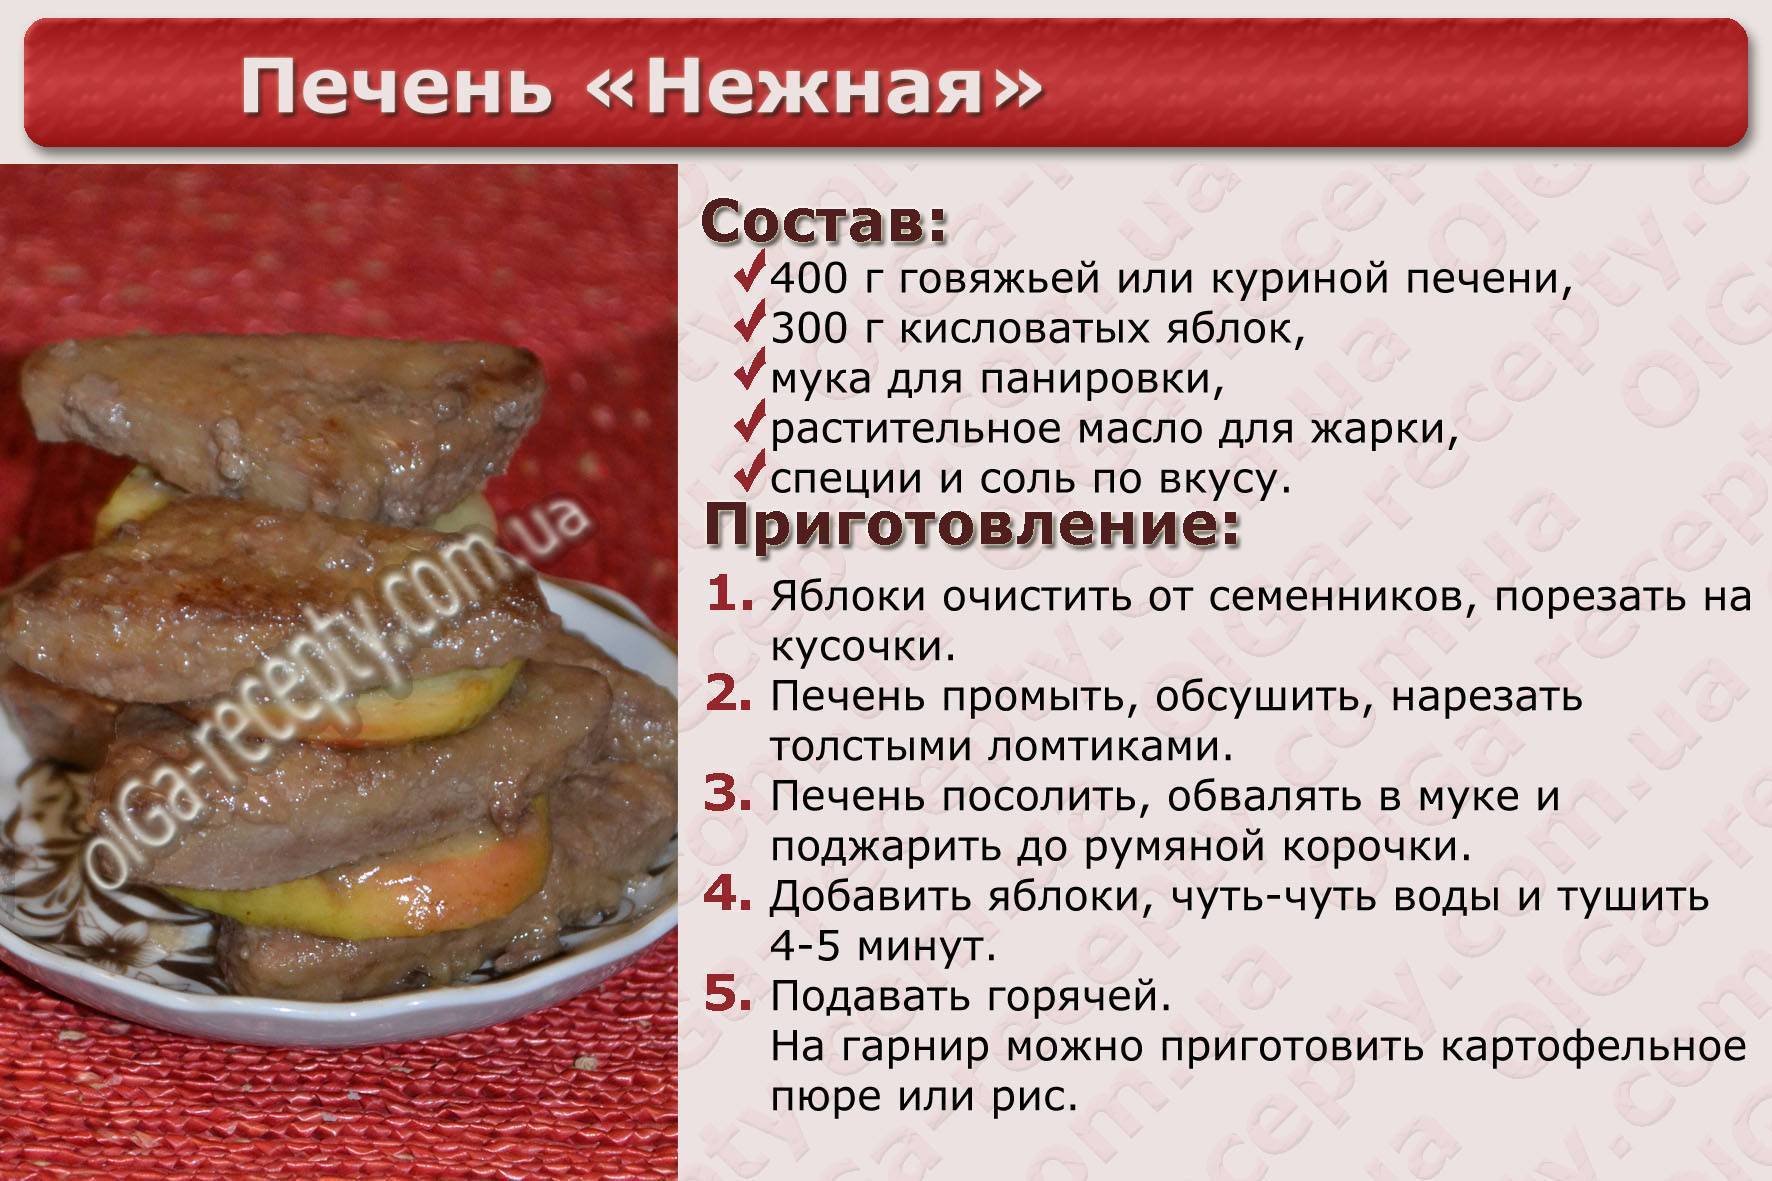 Мясо в 6 месяцев. Рецепты блюд в картинках с описанием. Рецепты в картинках печенка. Говяжья печень рецептура. Рецепты в картинках с описанием.